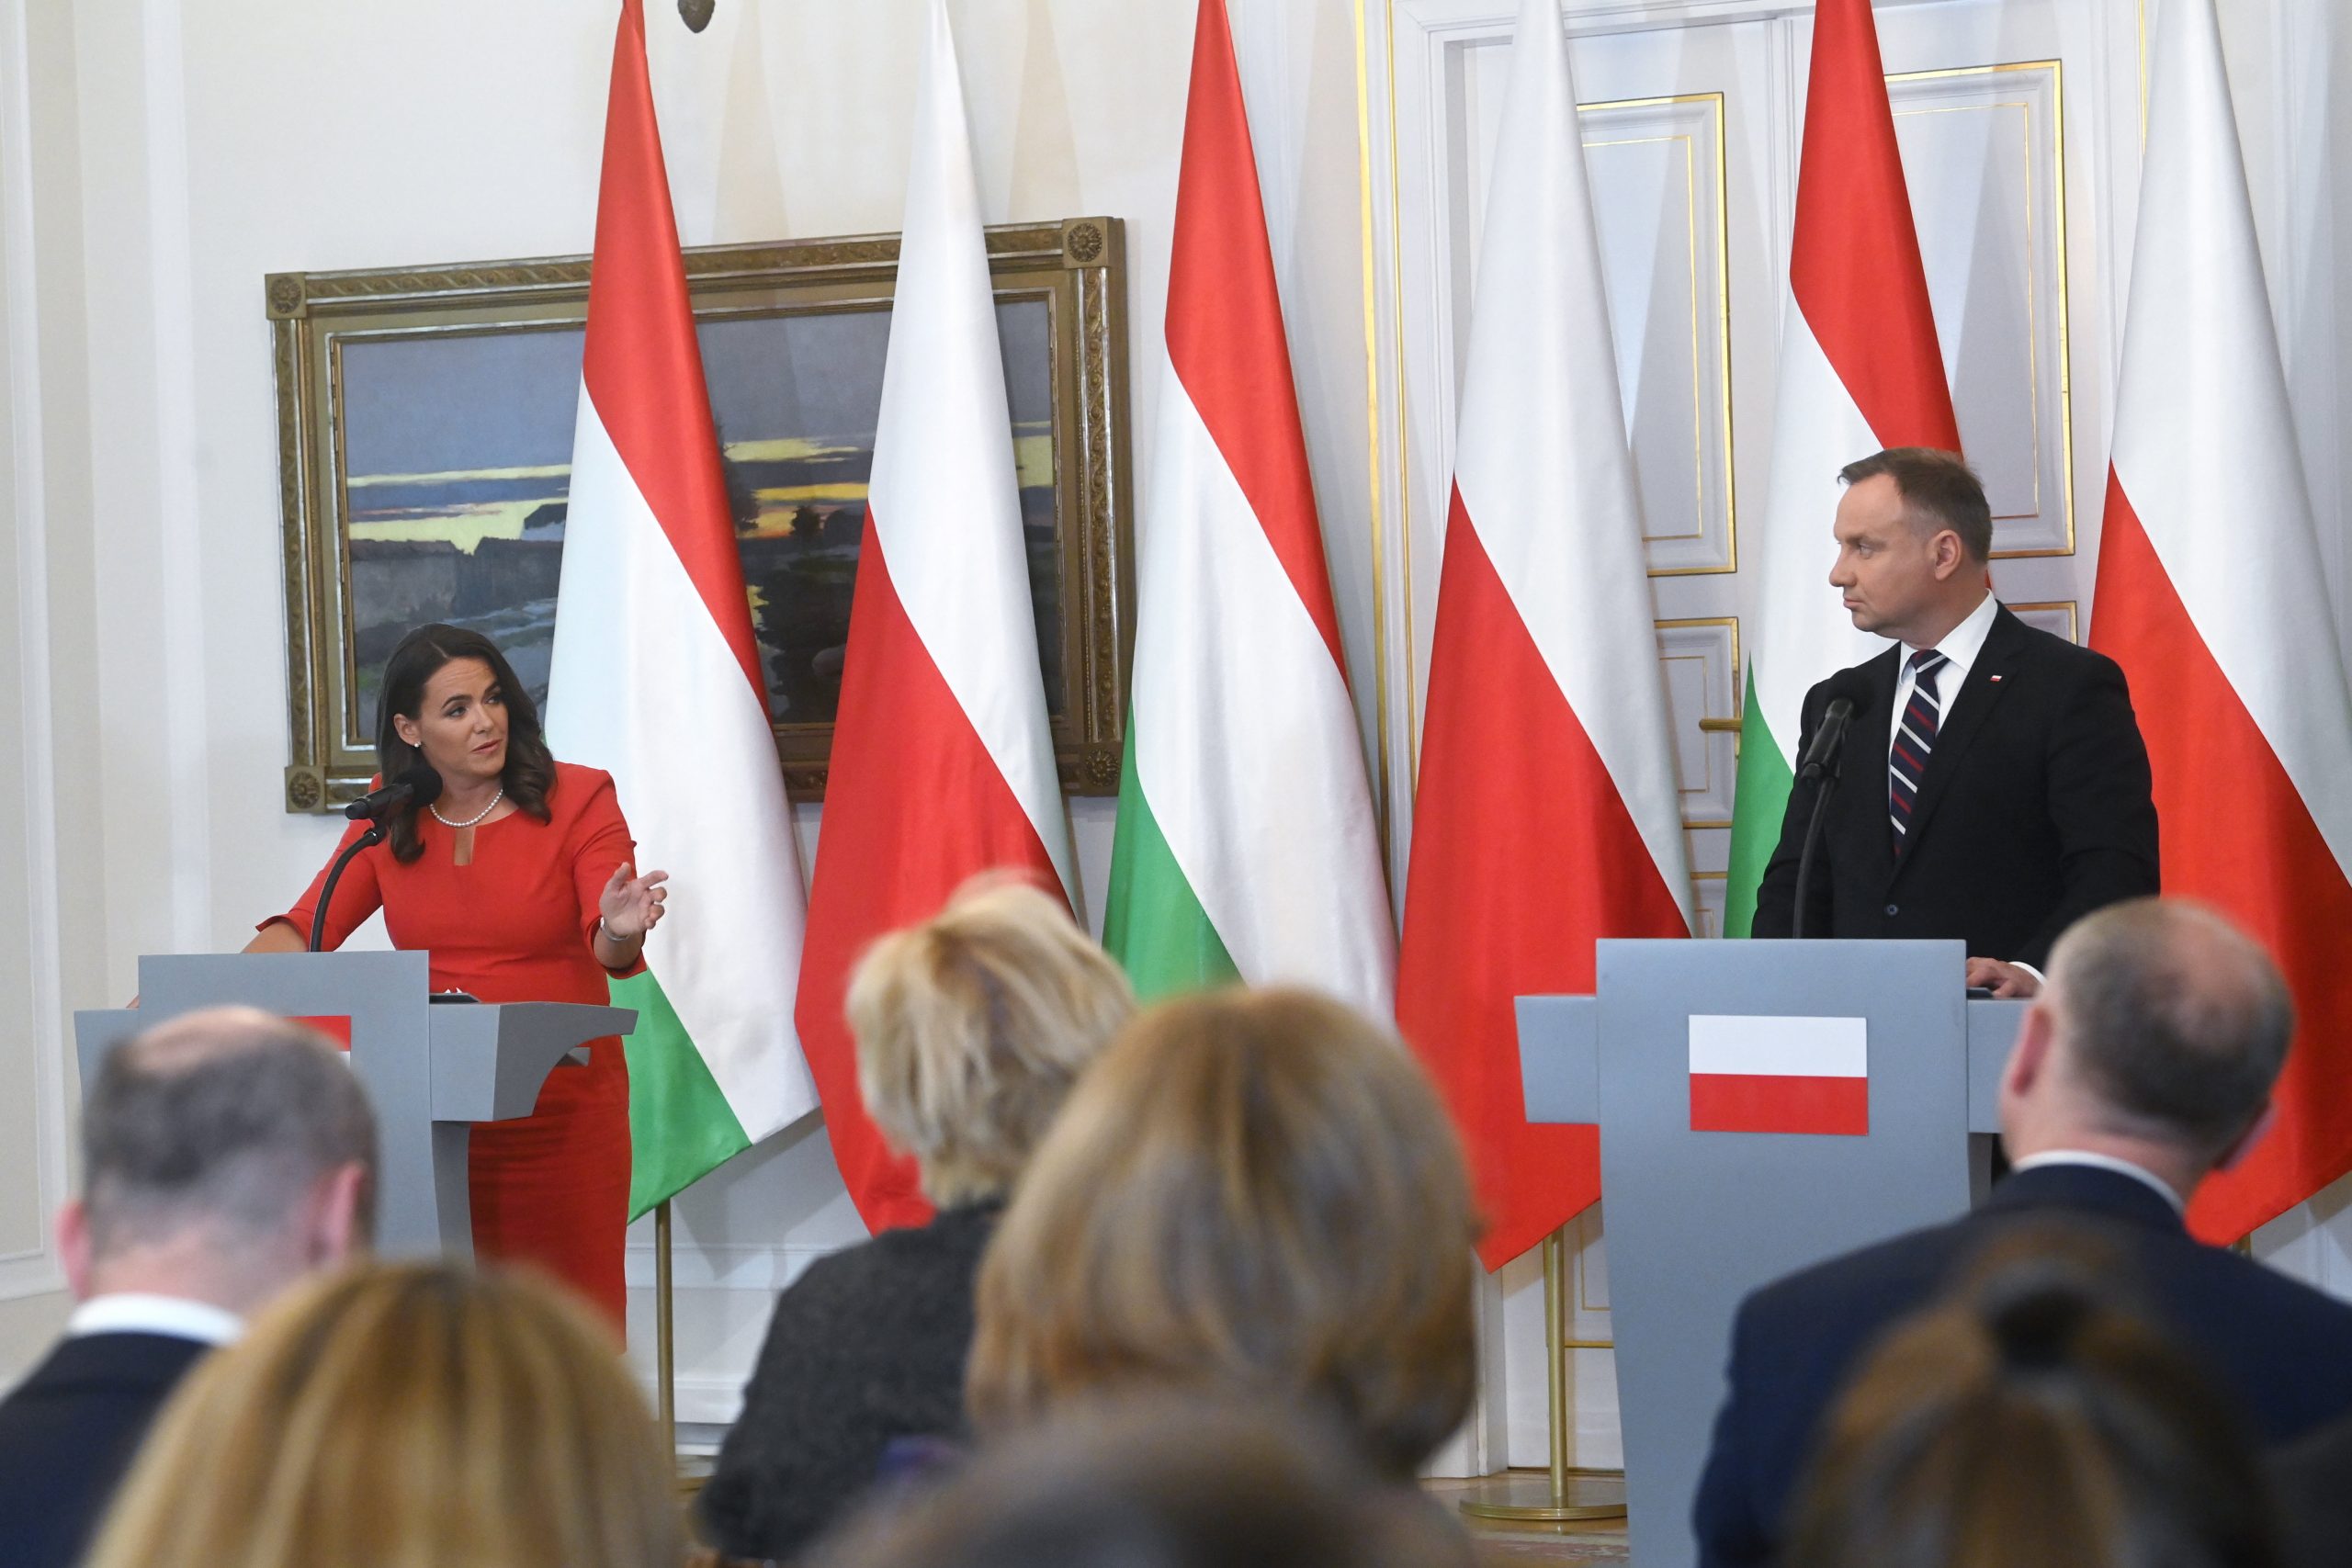 Staatspräsidentin in Warschau: Ungarn und Polen fordern die EK auf, die fälligen Mittel aus dem Wiederaufbaufonds bereitzustellen